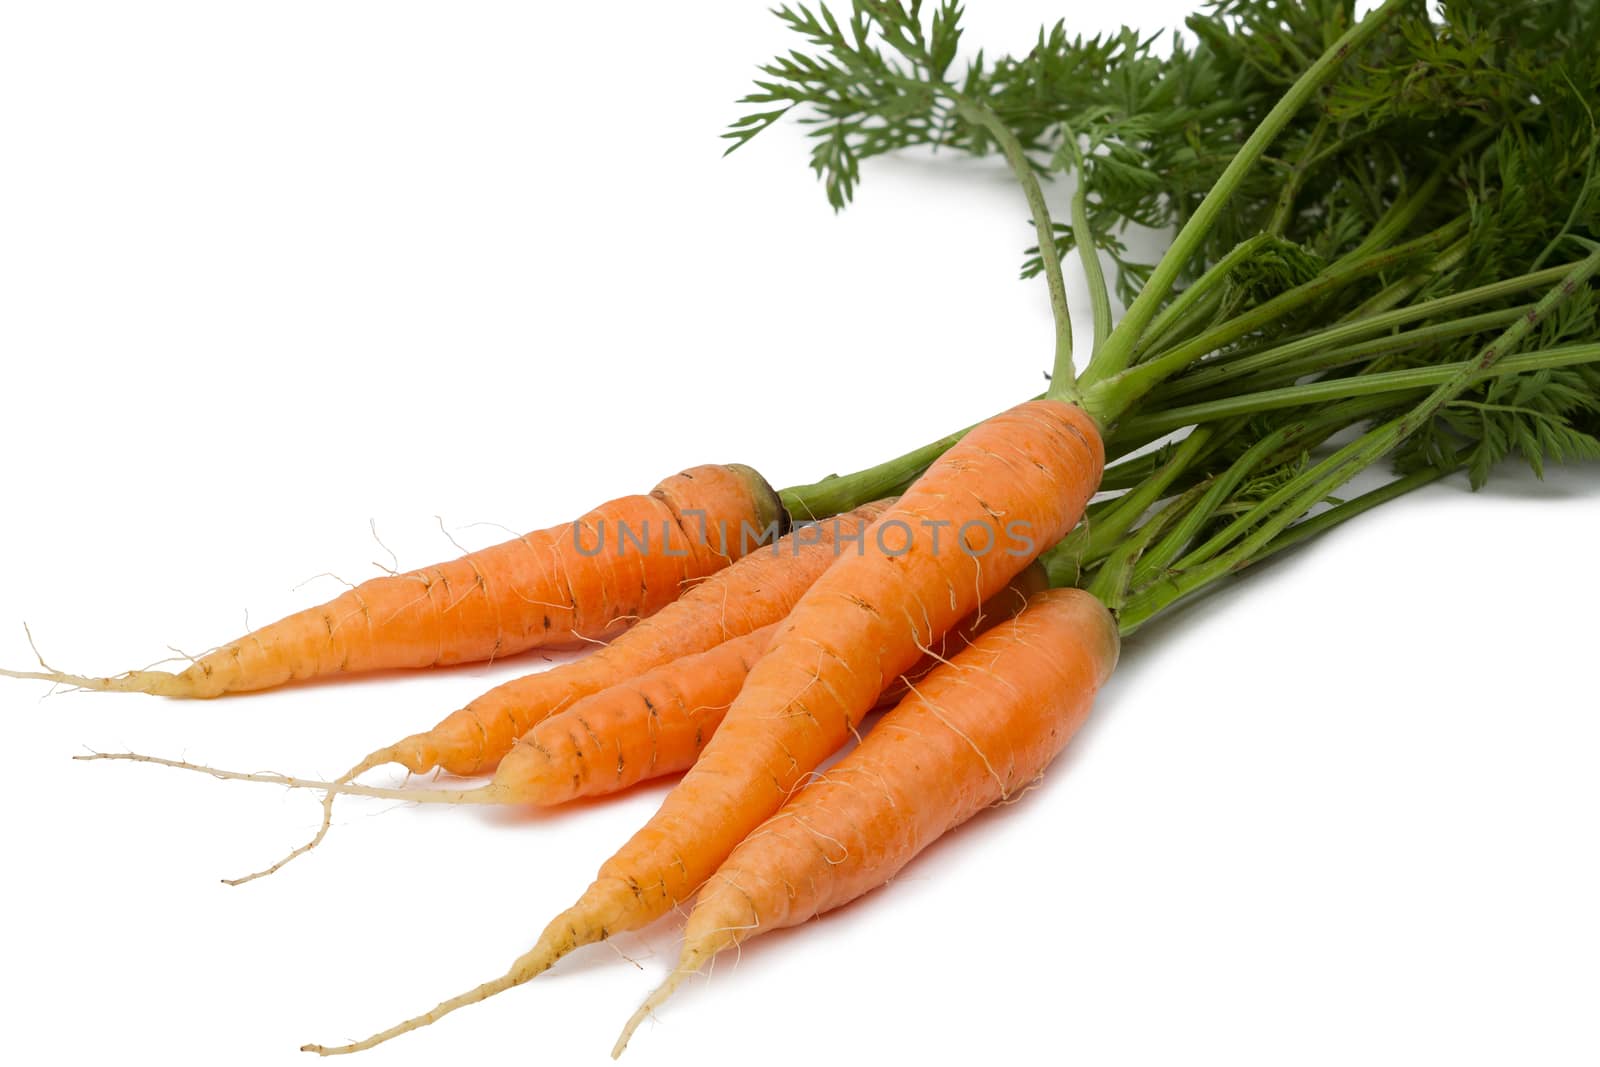 Carrots by Ohotnik